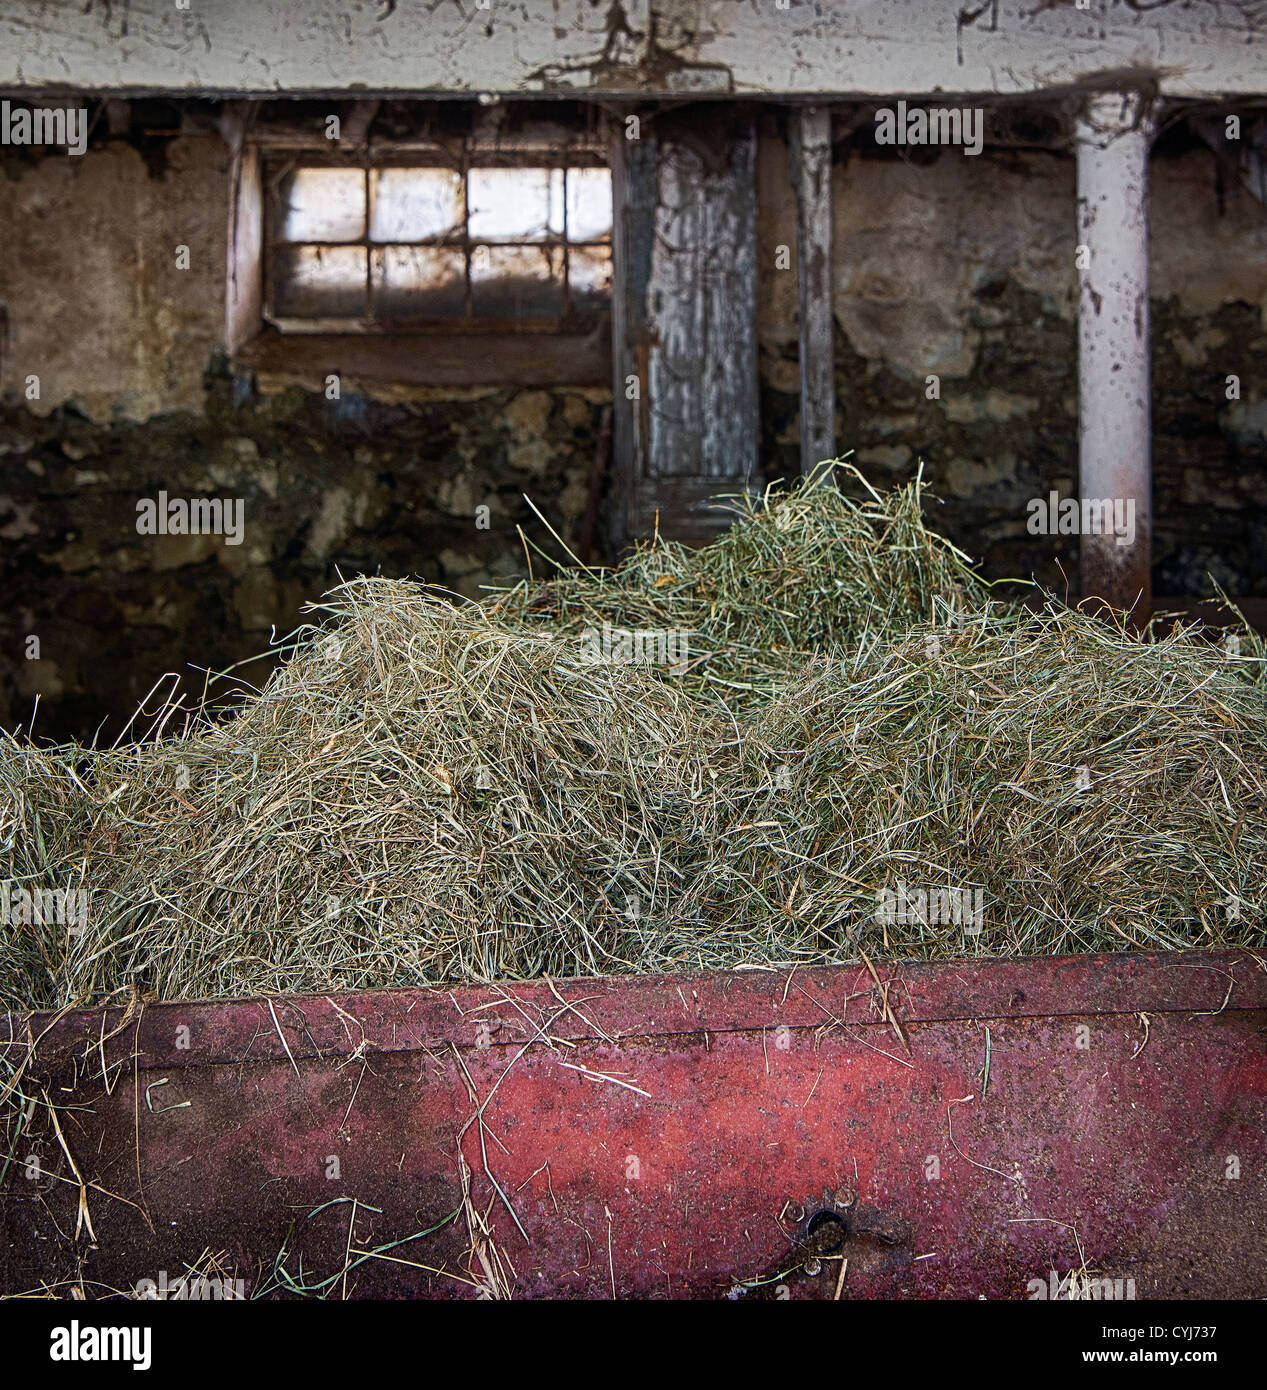 Dans une grange à foin ben à l'alimentation du bétail Banque D'Images